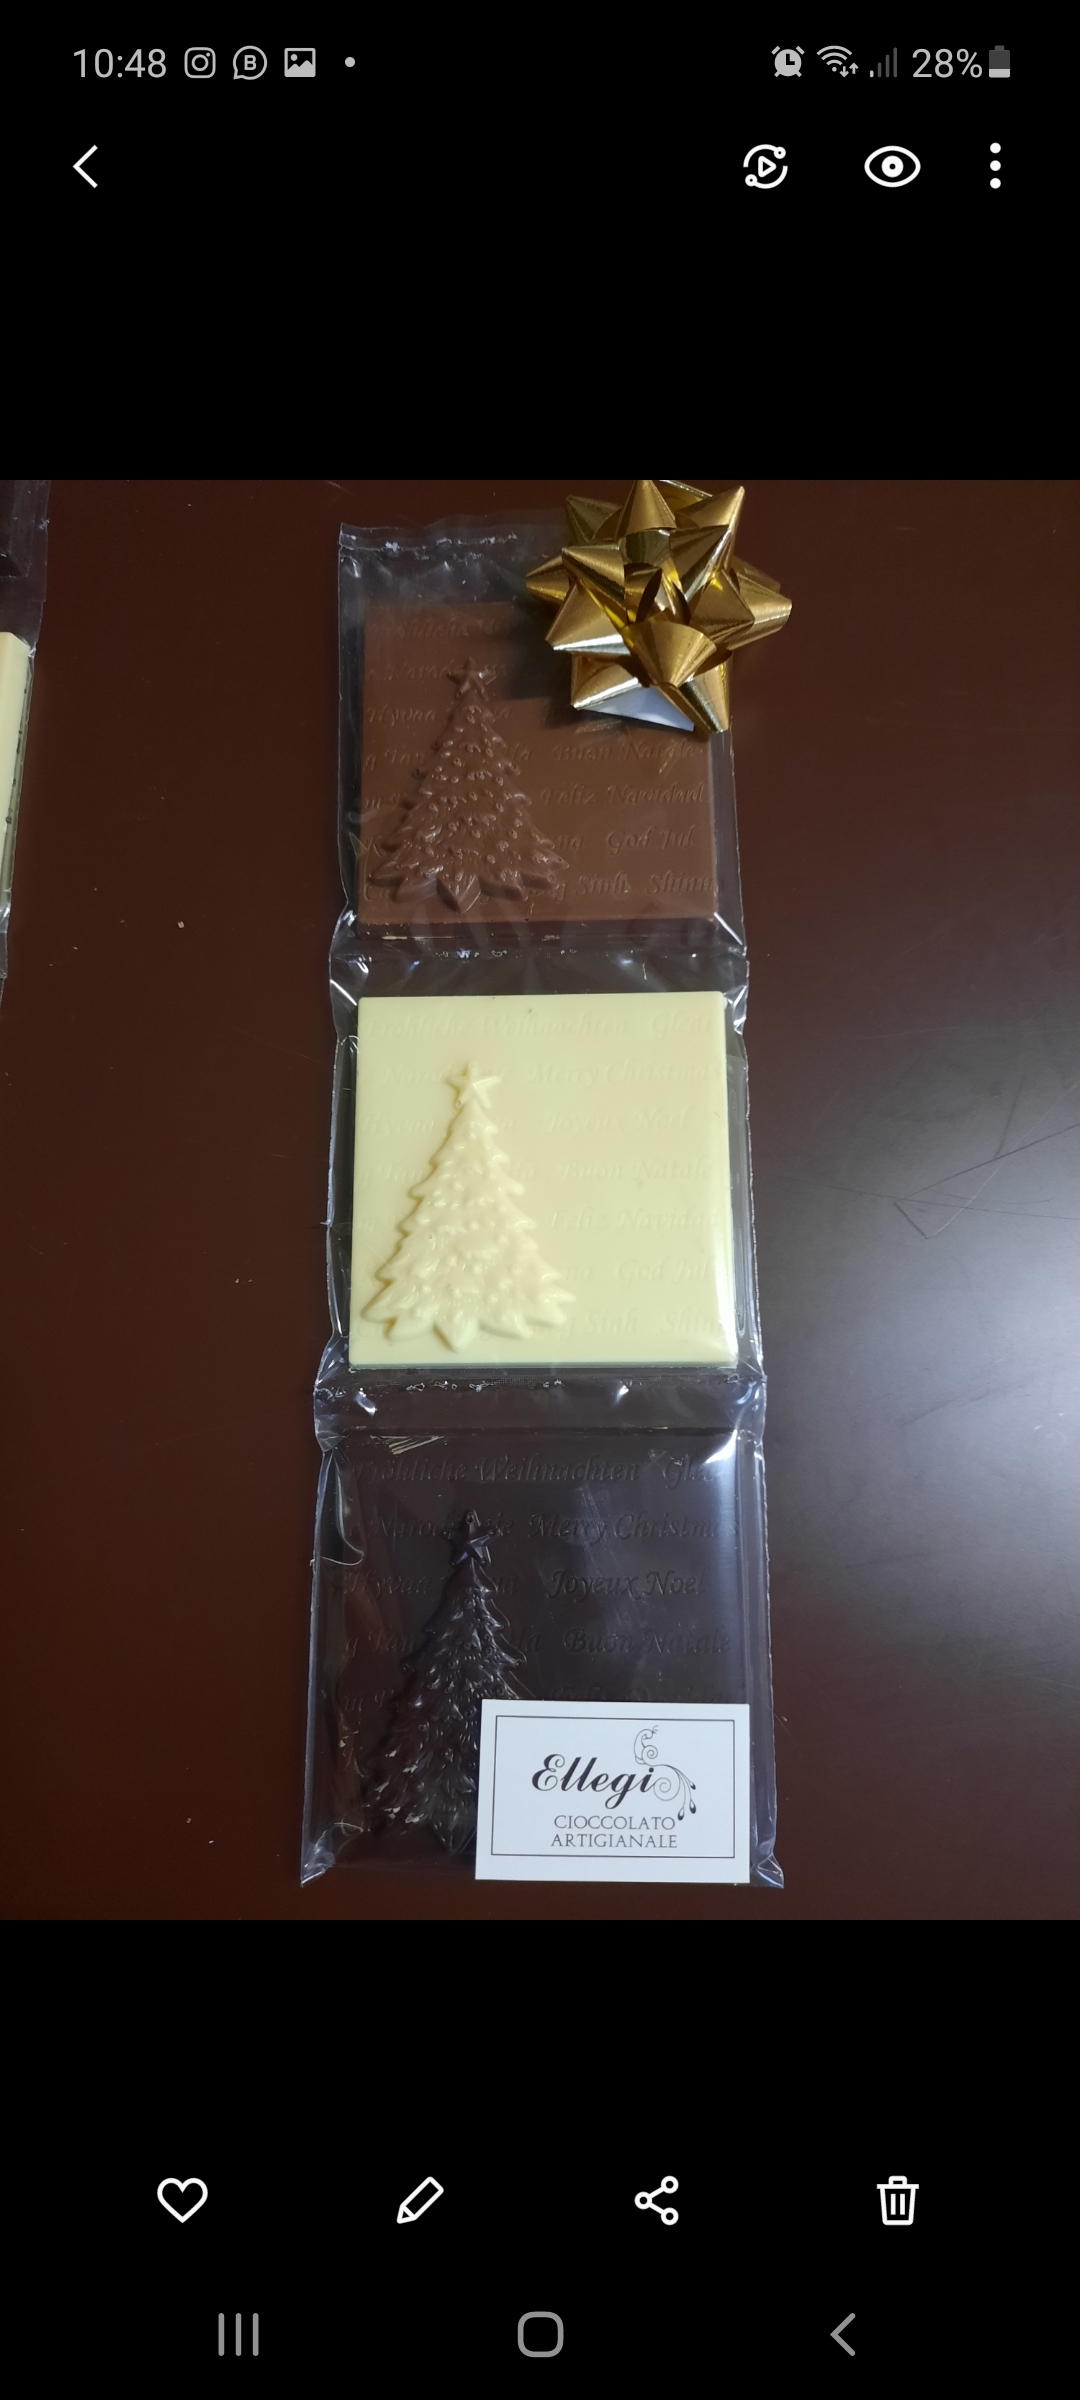 Tris mattonelline natalizie al cioccolato bianco latte e fondente